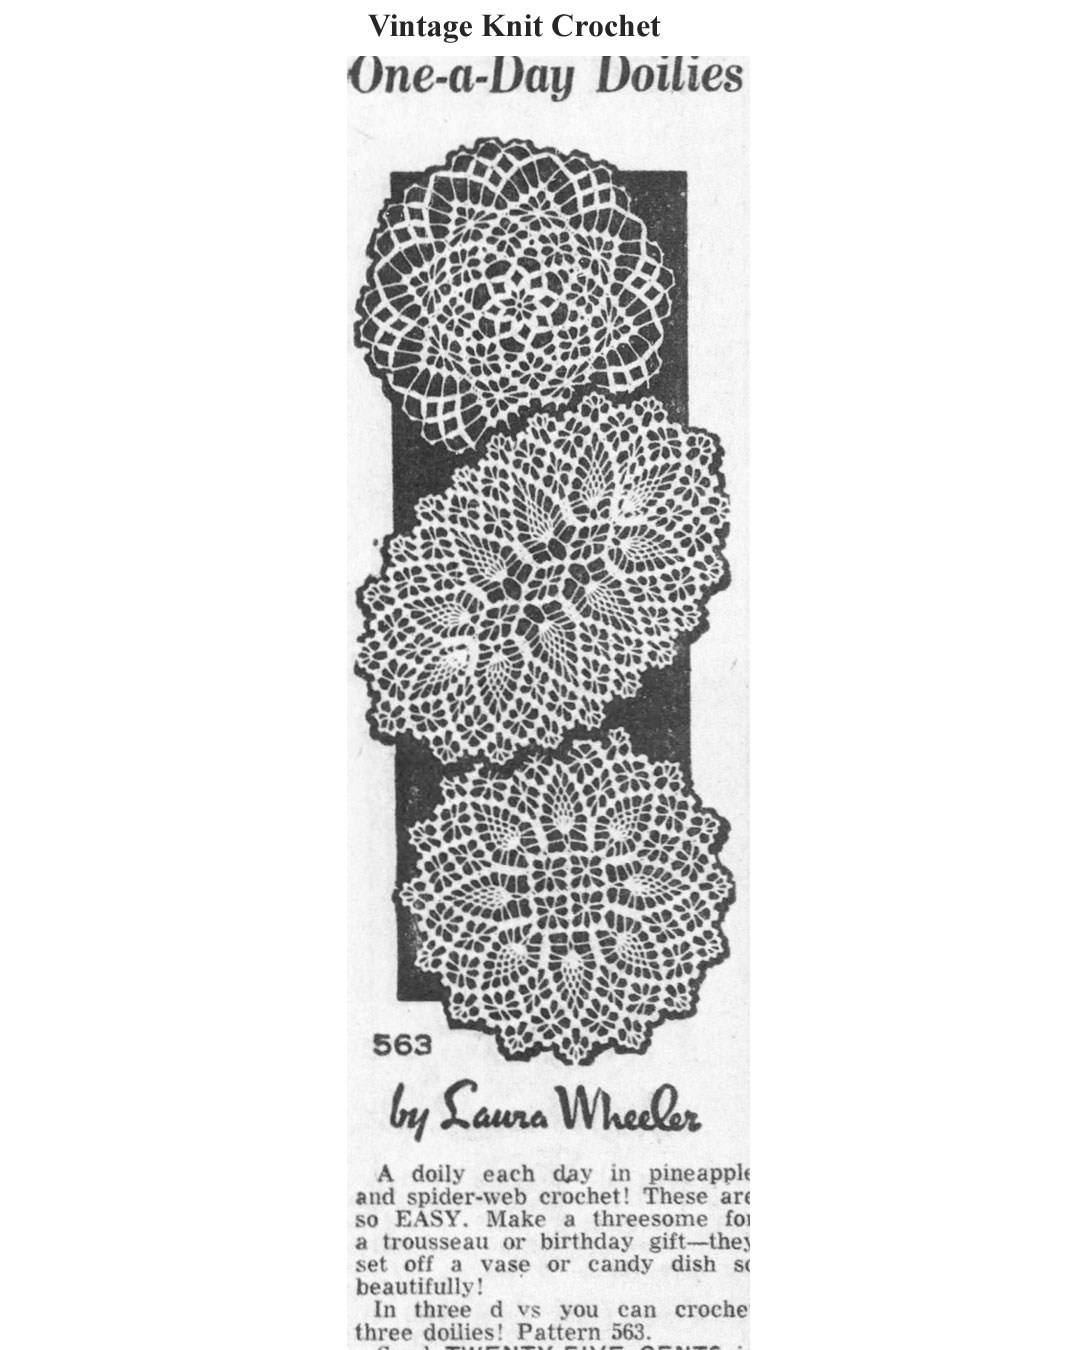 small crochet doilies pattern laura wheeler design 563 newspaper advertisement 